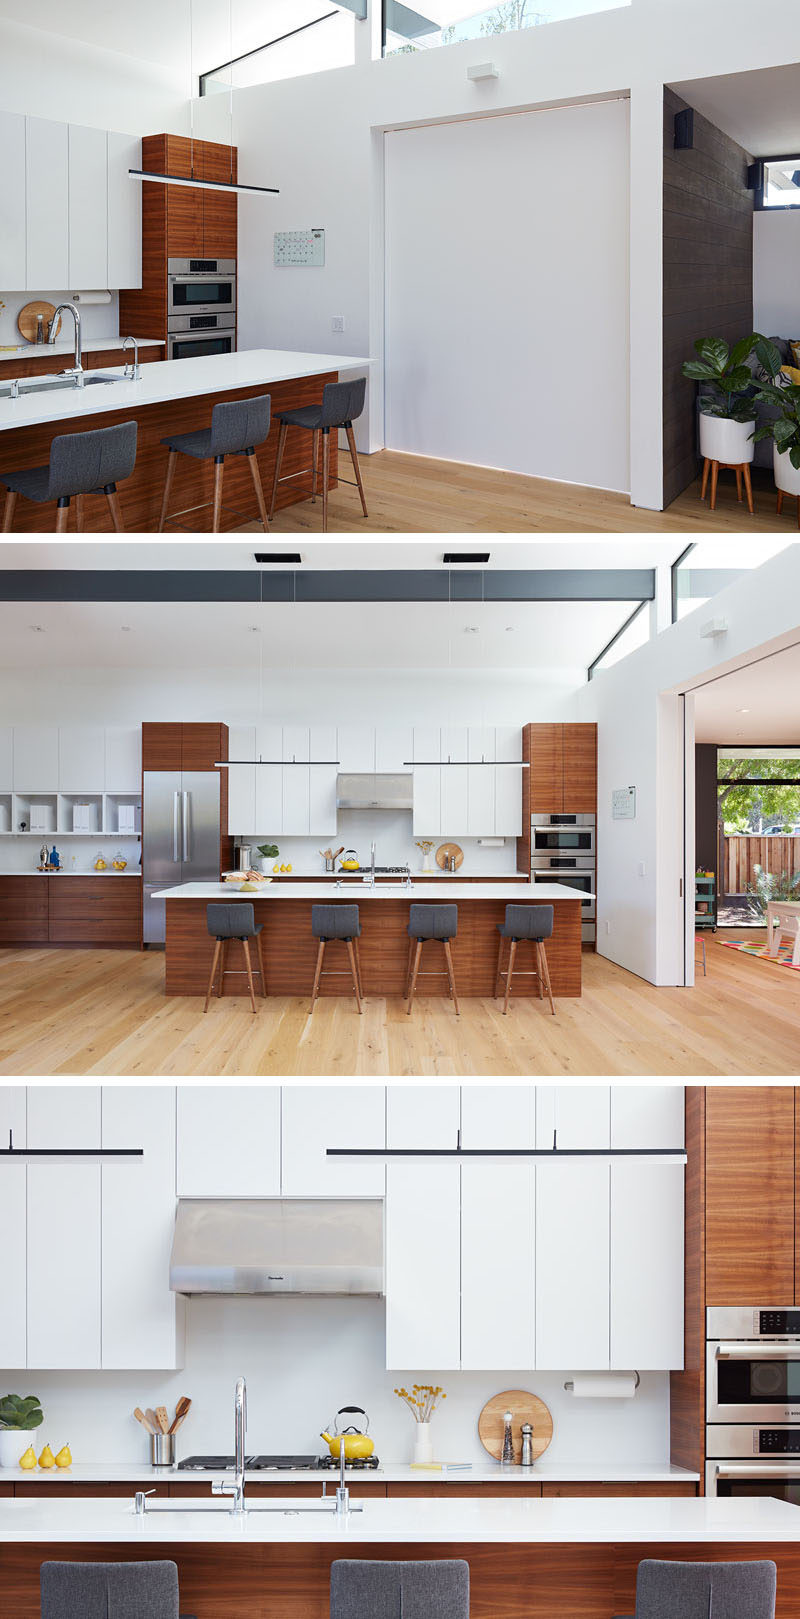 Раздвижная дверь может закрыть от основных зон зон дома. На кухне белые минималистичные шкафы сочетаются с деревянными элементами комнаты. #ModernKitchen #KitchenDesign #WoodAndWhiteKitchen